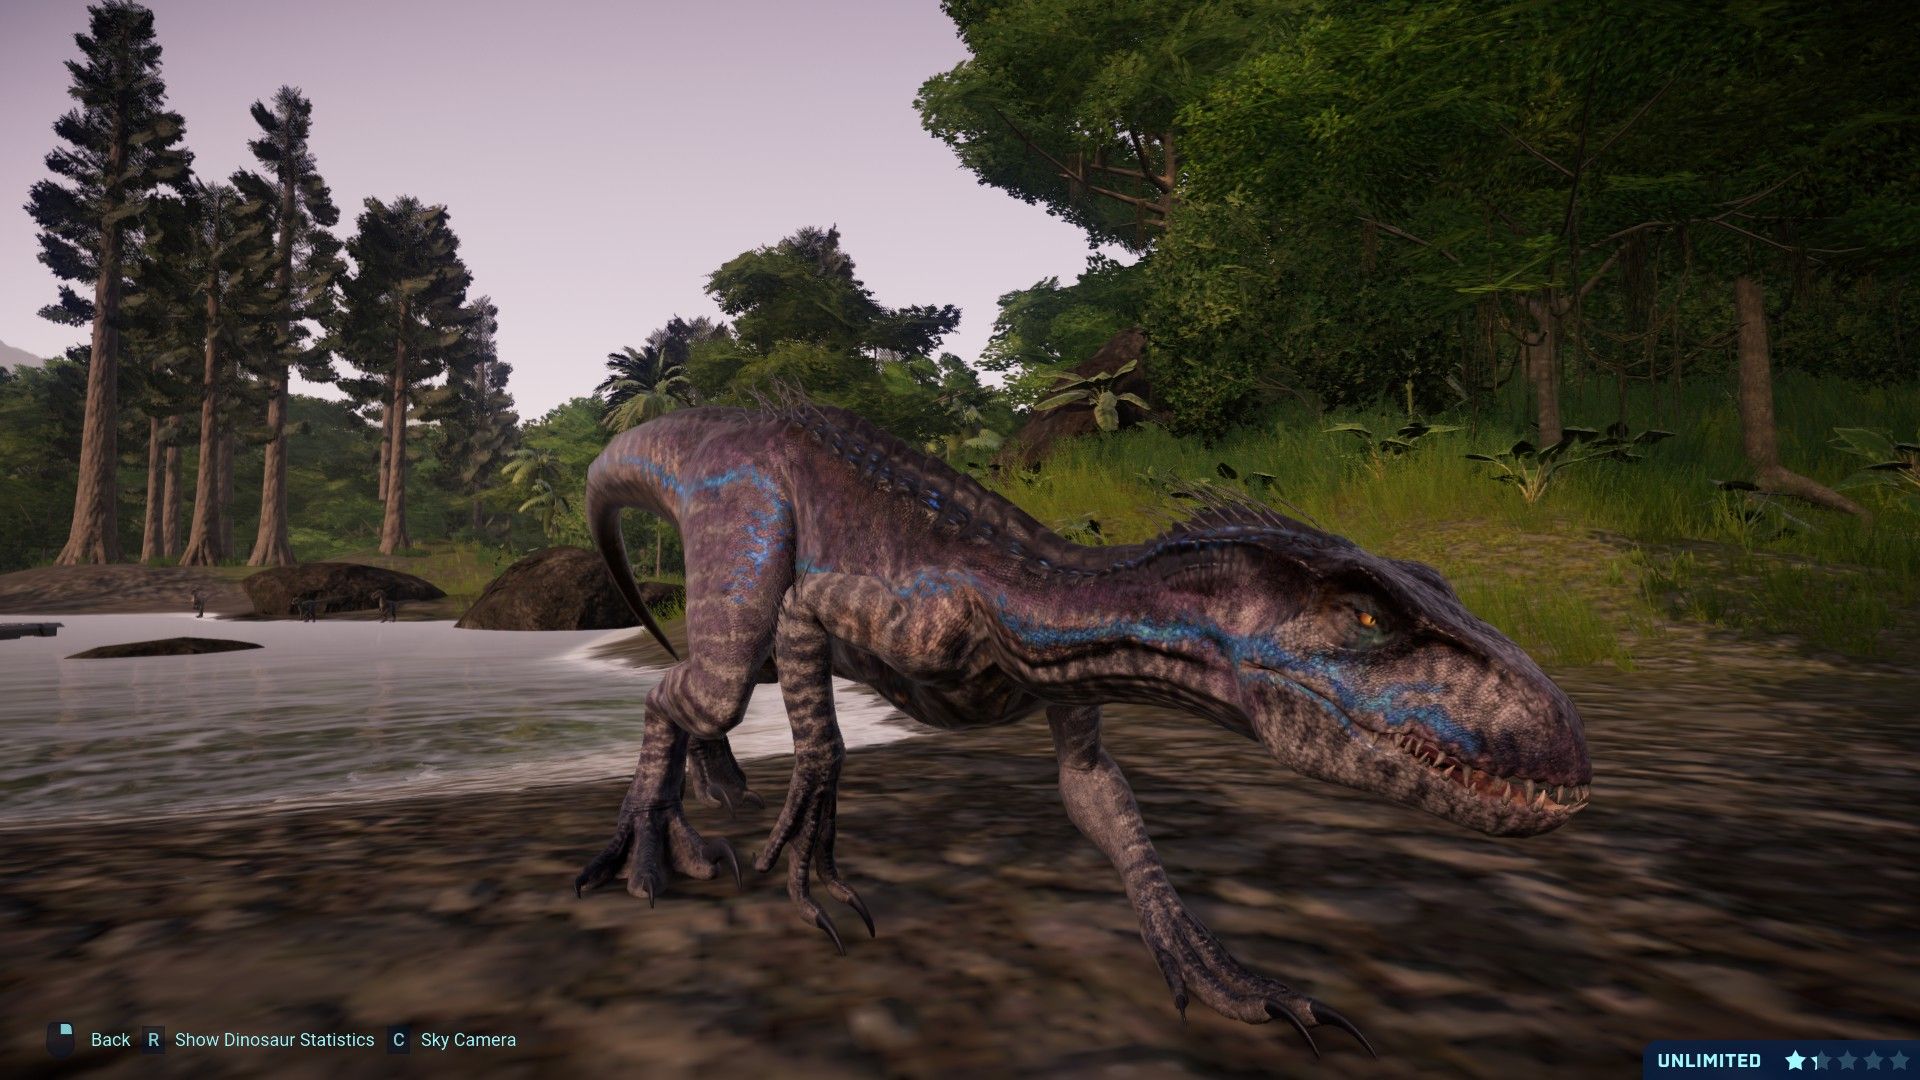 Jurassic World The Game Indoraptor Gen 2 texture mod at Jurassic World Evolution Nexus and community